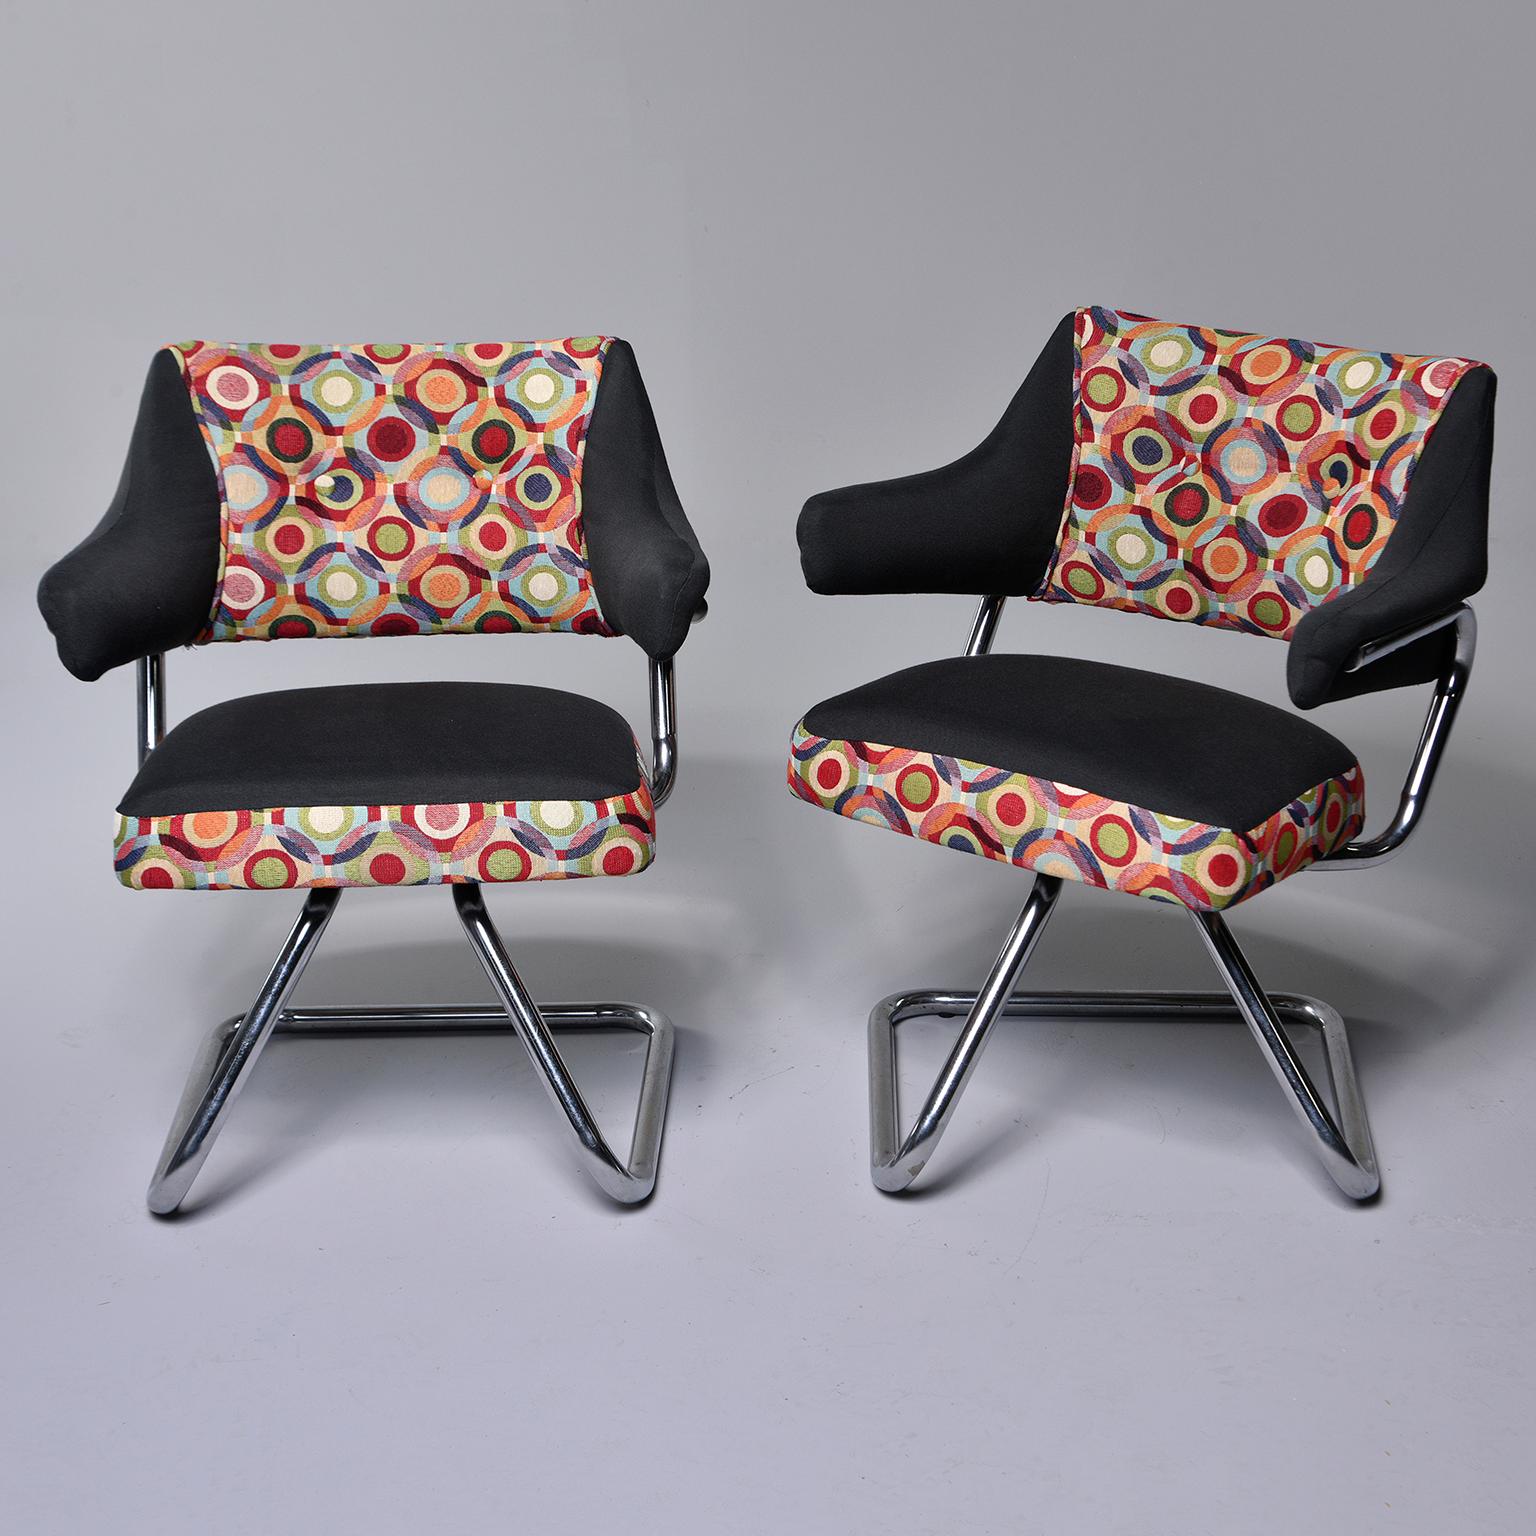 Cette paire de fauteuils italiens des années 1960 est dotée d'une base chromée en porte-à-faux, de sièges pivotants et d'un nouveau rembourrage en tissu coloré de style Missoni. Vendu et tarifé comme une paire. 

Hauteur des bras :  24.5”  Hauteur